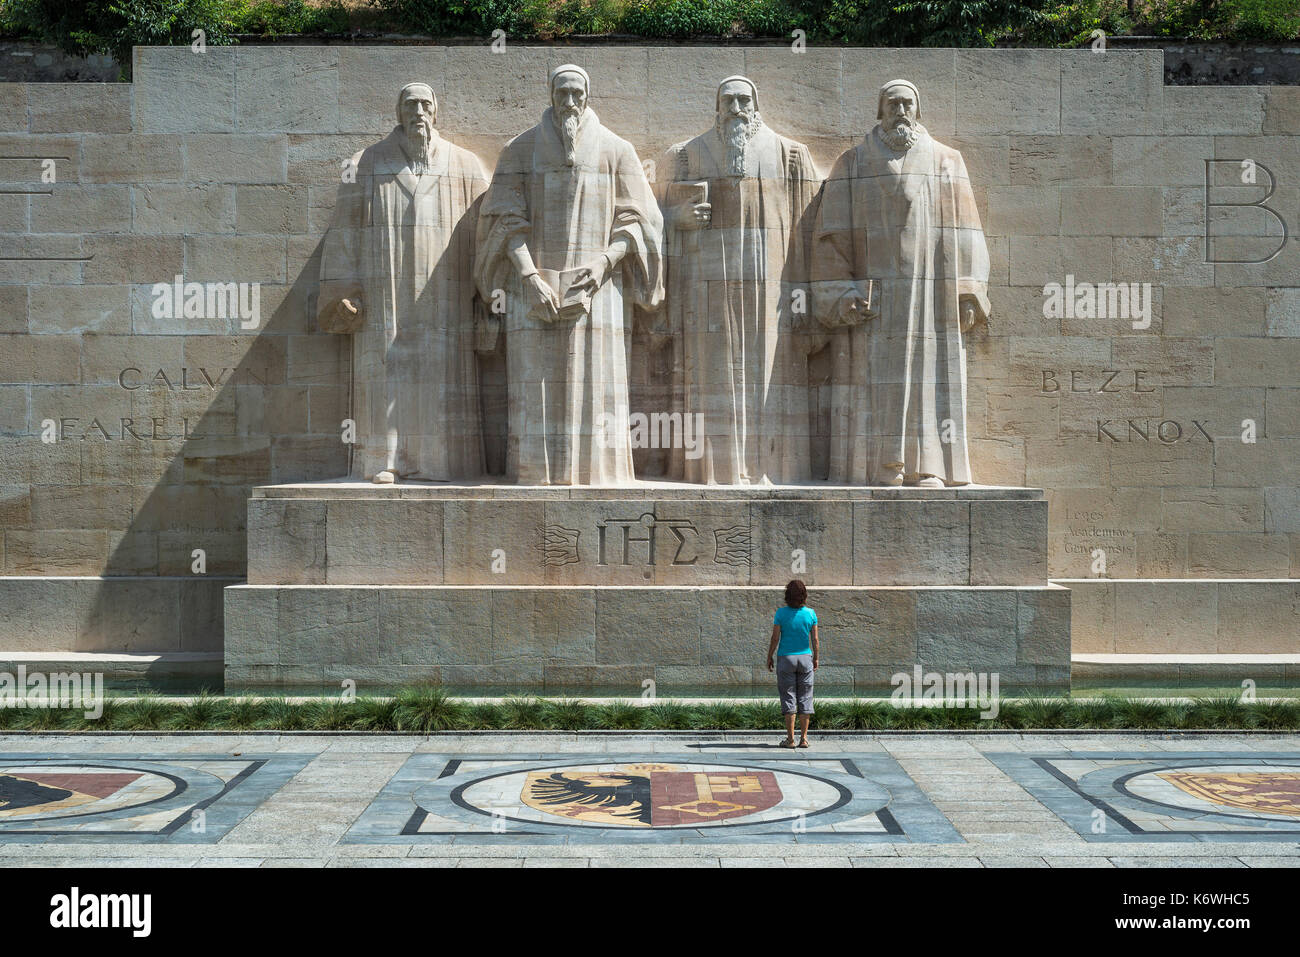 Die reformatoren Farel, Calvin, Beza und Knox (von links nach rechts), Skulpturen an der Internationalen Monument der Reformation Stockfoto